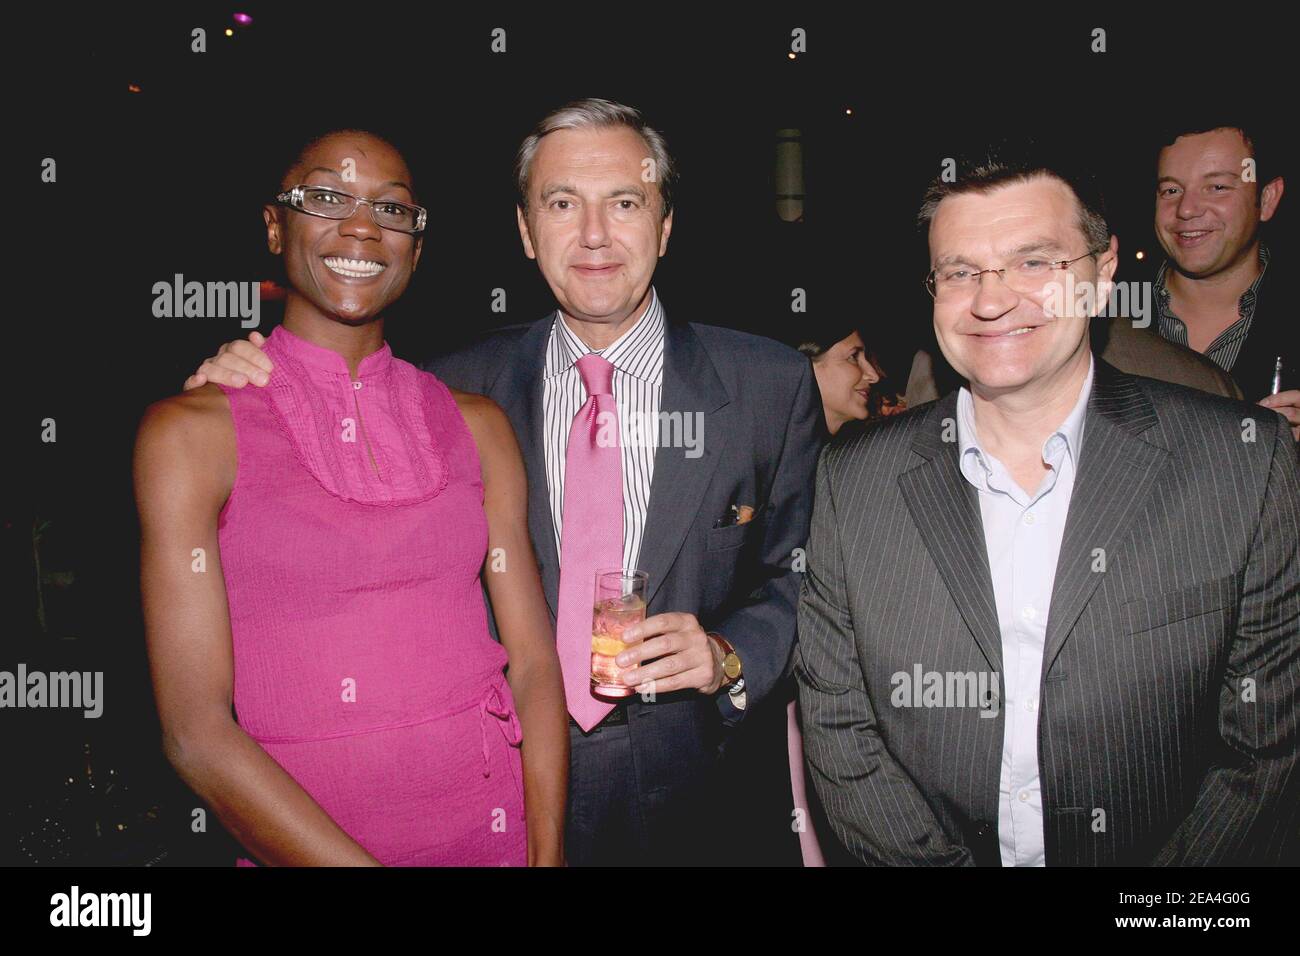 Chaîne de télévision française FRANCE 4 présentateurs du programme 'Soyons  sport' (de gauche à droite) Frédéric Bangue, Daniel Bilalian, Patrick  Montel lors des prix ITHEME 2005 au 'le Bataclan' à Paris, France,